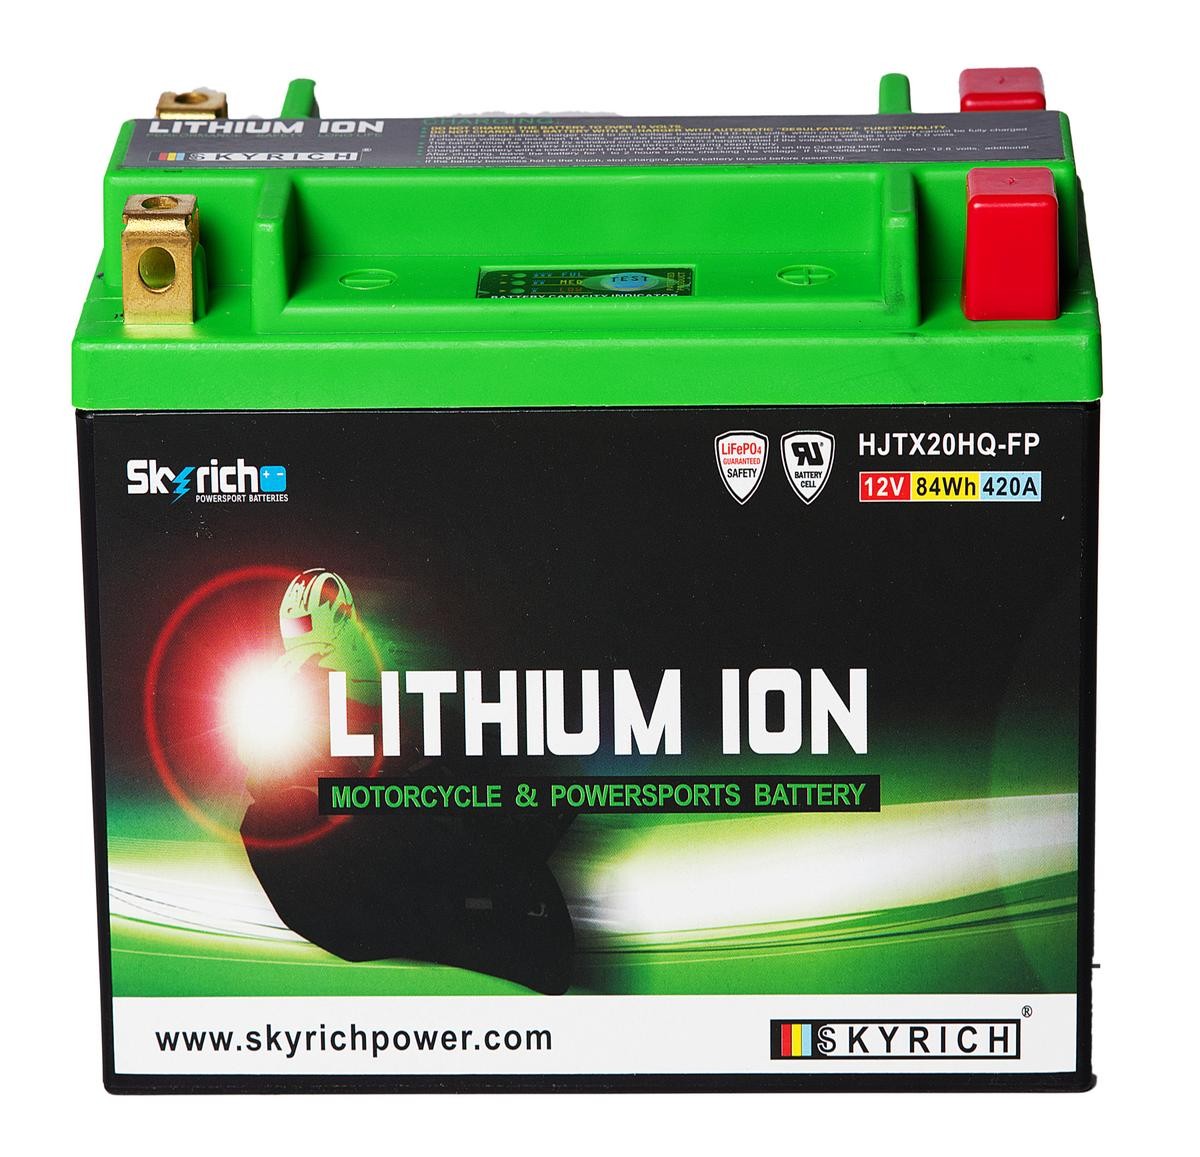 HARLEY-DAVIDSON ELECTRA GLIDE Batterie 12V 7Ah 420A N Li-Ionen-Batterie SKYRICH LITHIUM ION HJTX20HQ-FP